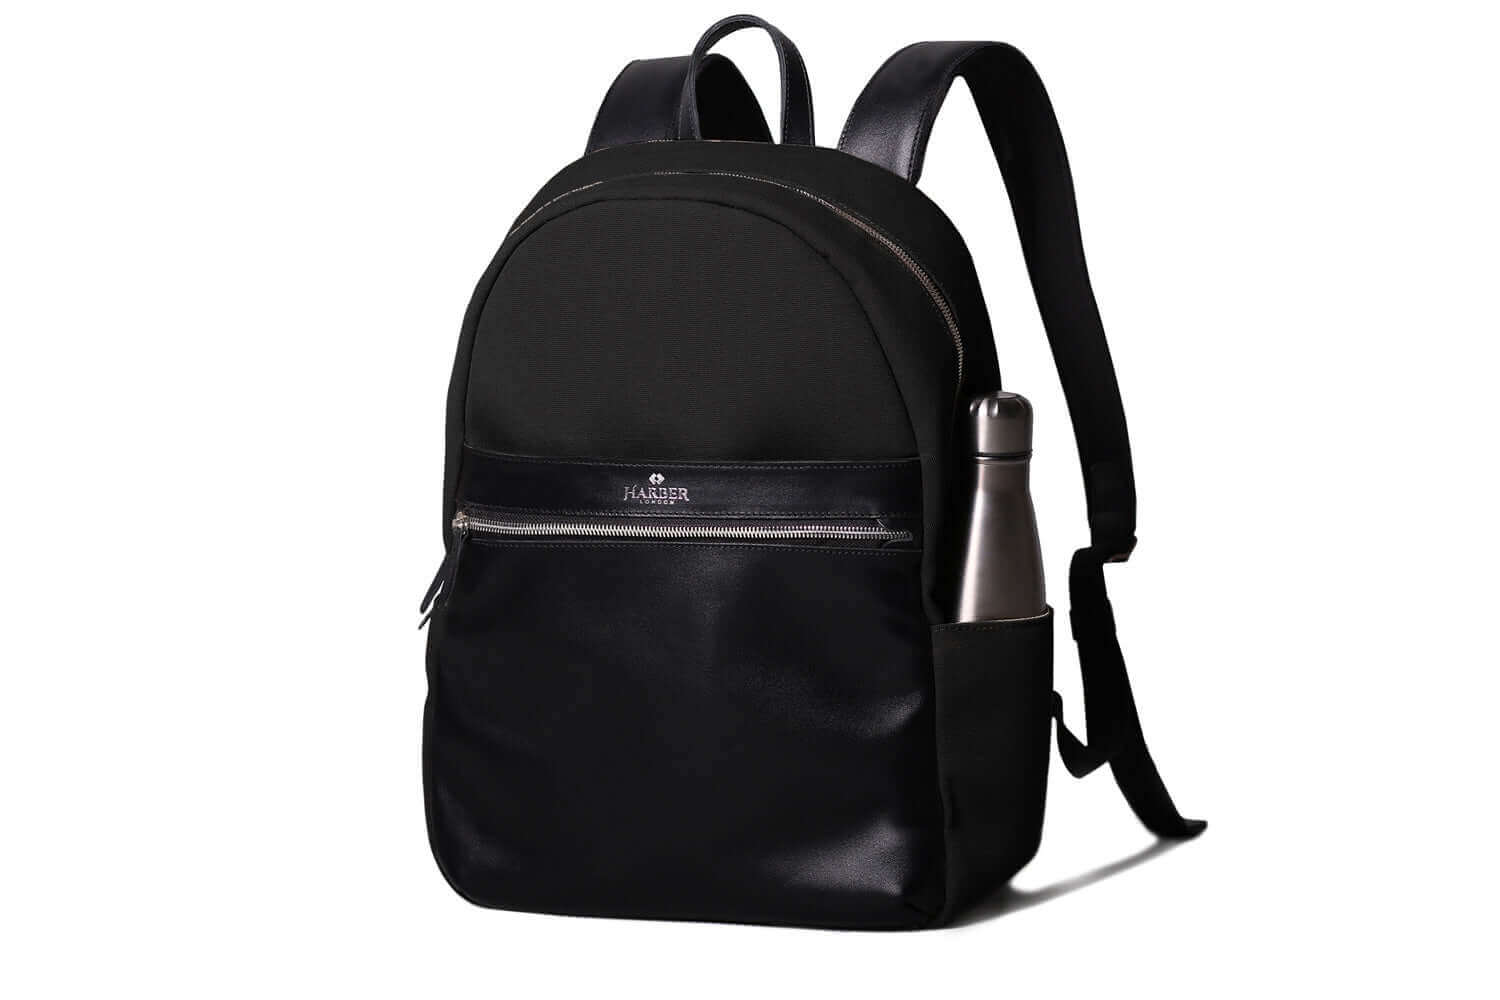 Office Backpack for Laptops | Harber London